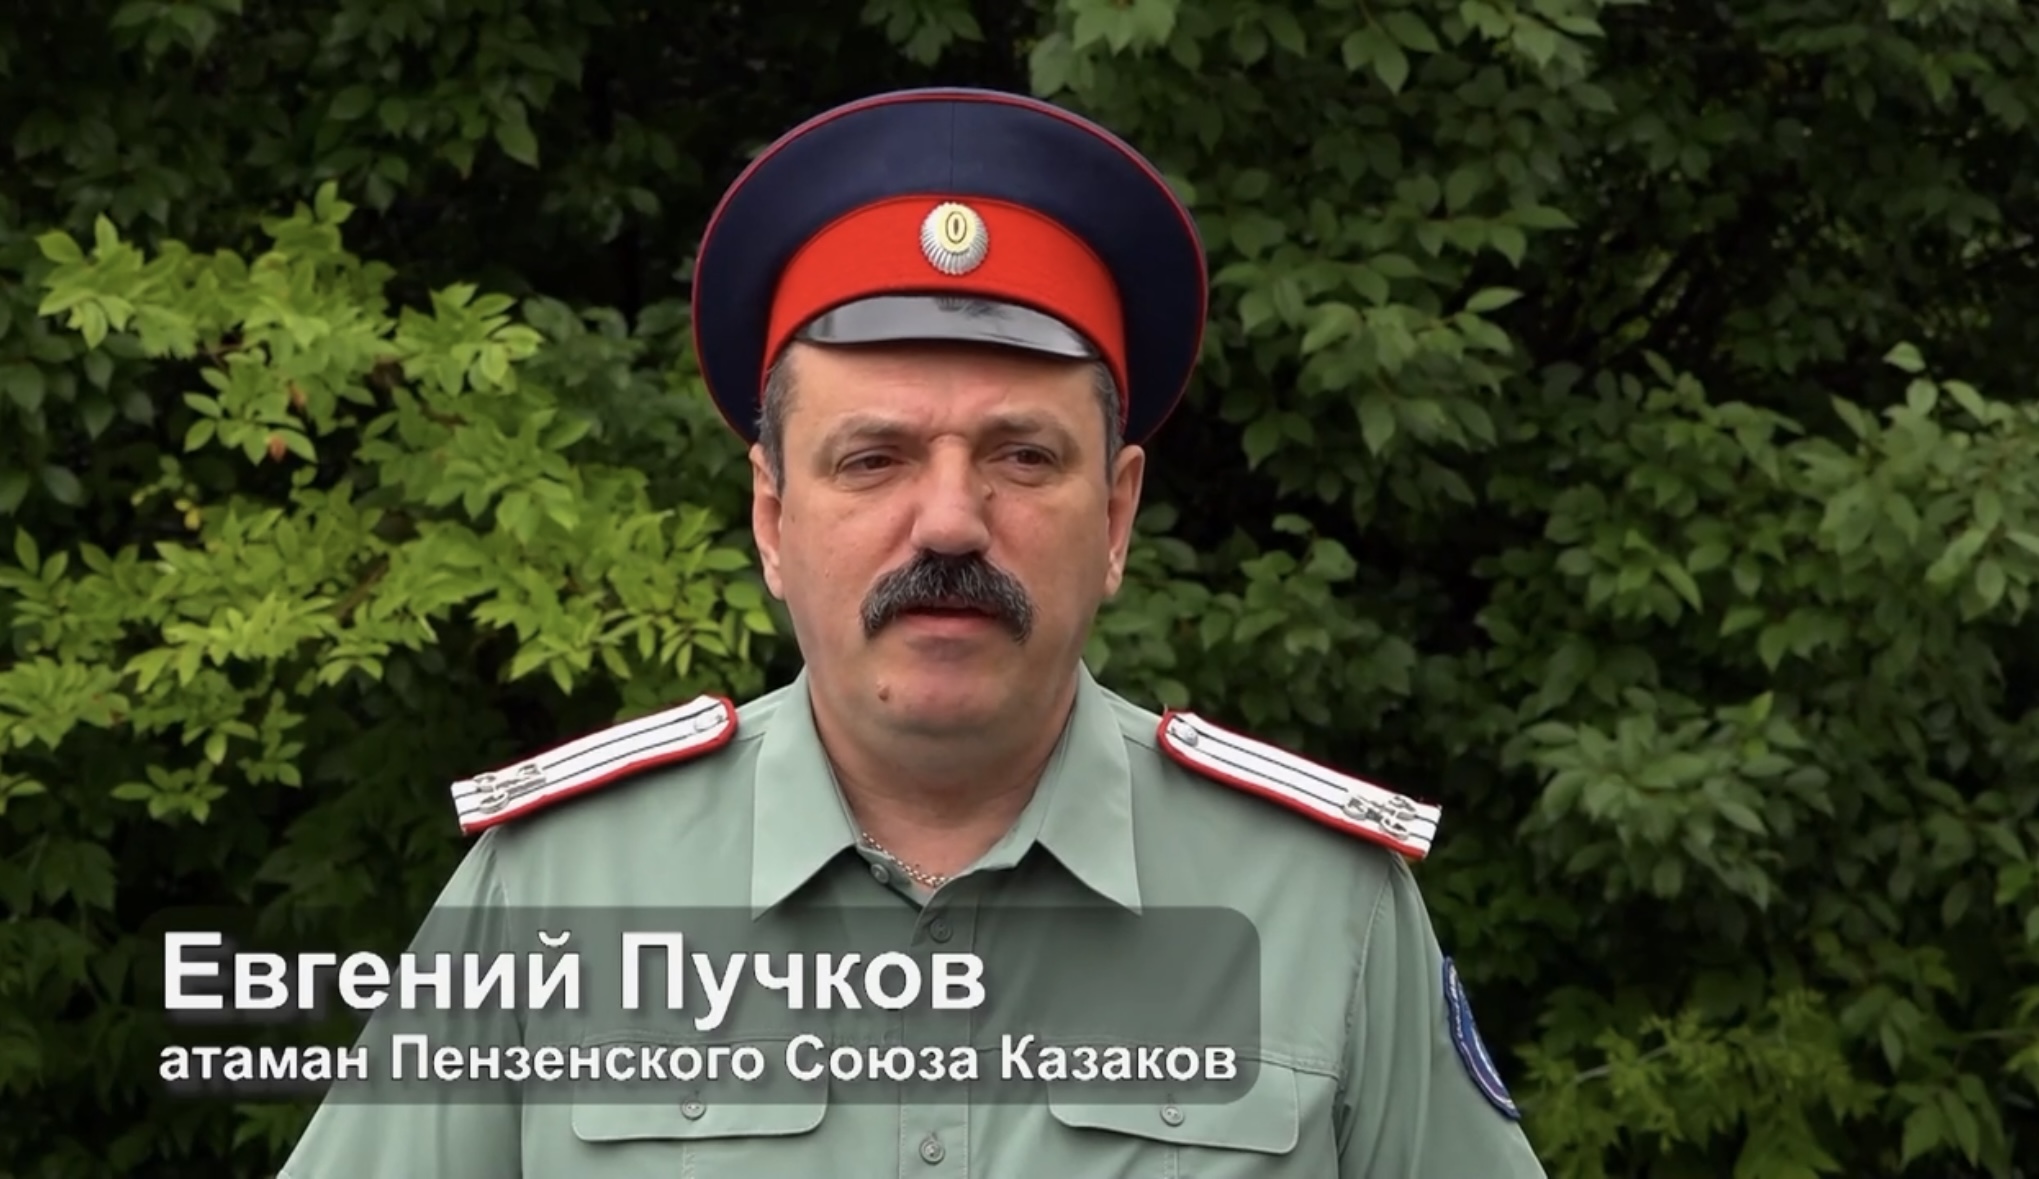 Евгений Пучков: «Мы, казаки, за сильное и единое государство, против гражданской войны»